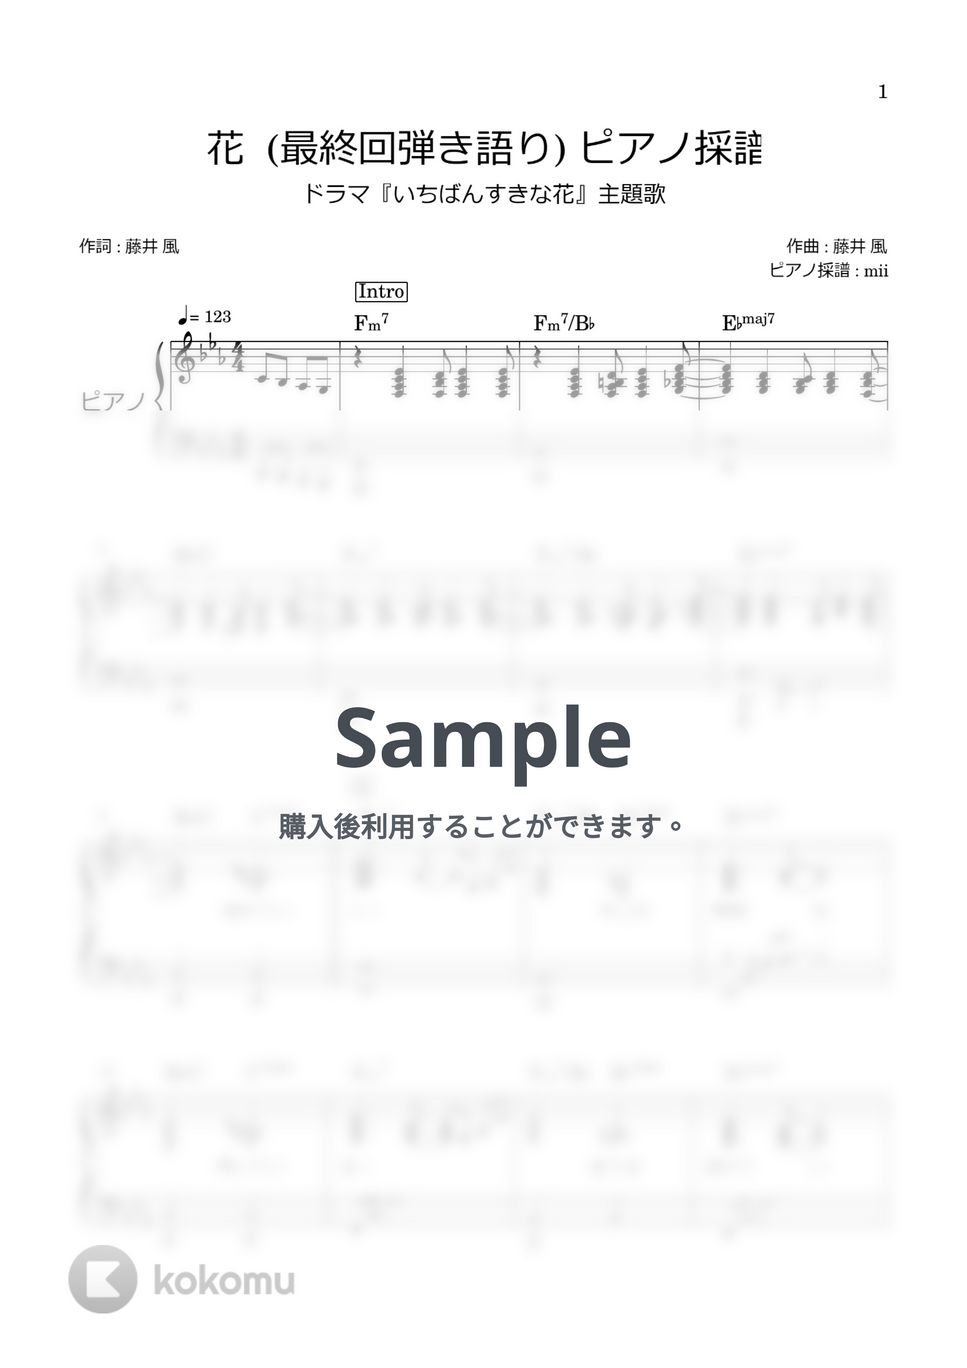 藤井風 - 花 (最終回弾き語り伴奏のみ) by miiの楽譜棚